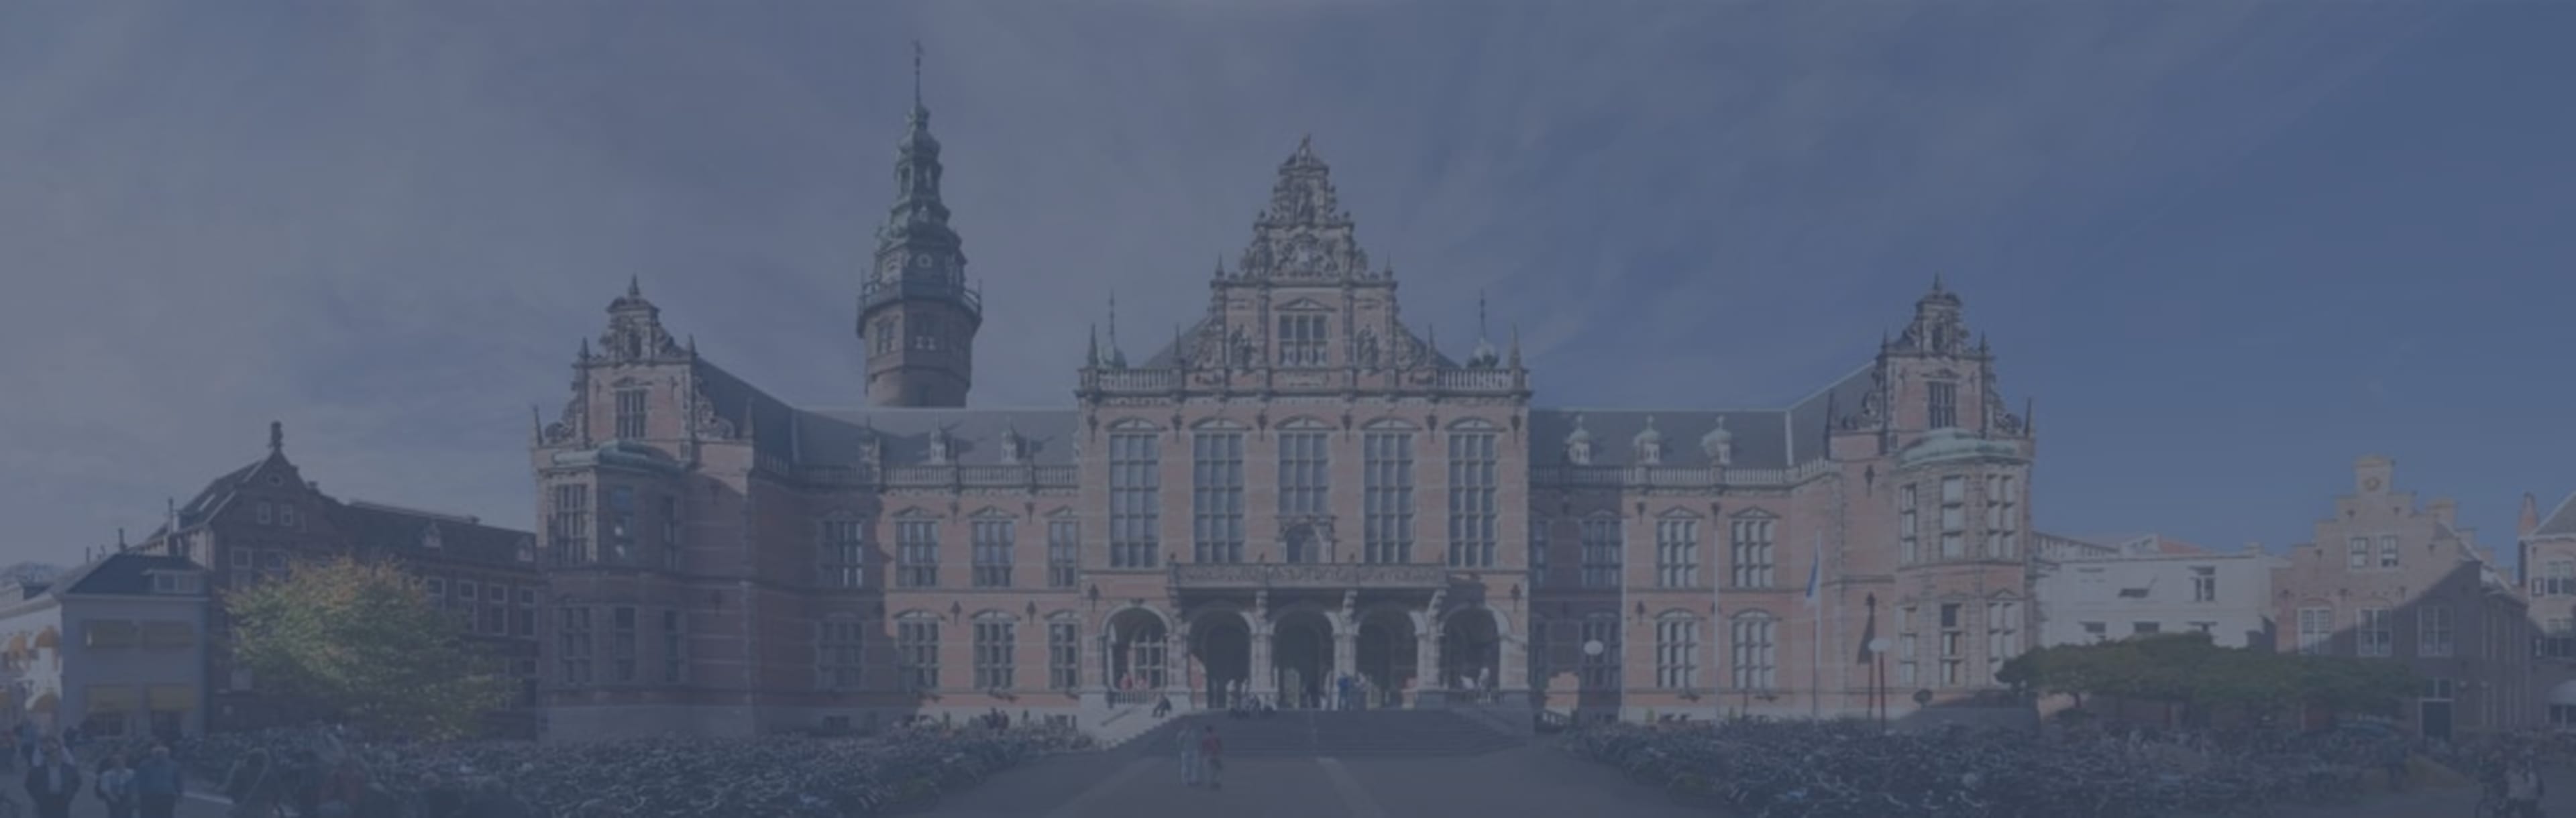 University of Groningen Msc klinische en psychosociale epidemiologie